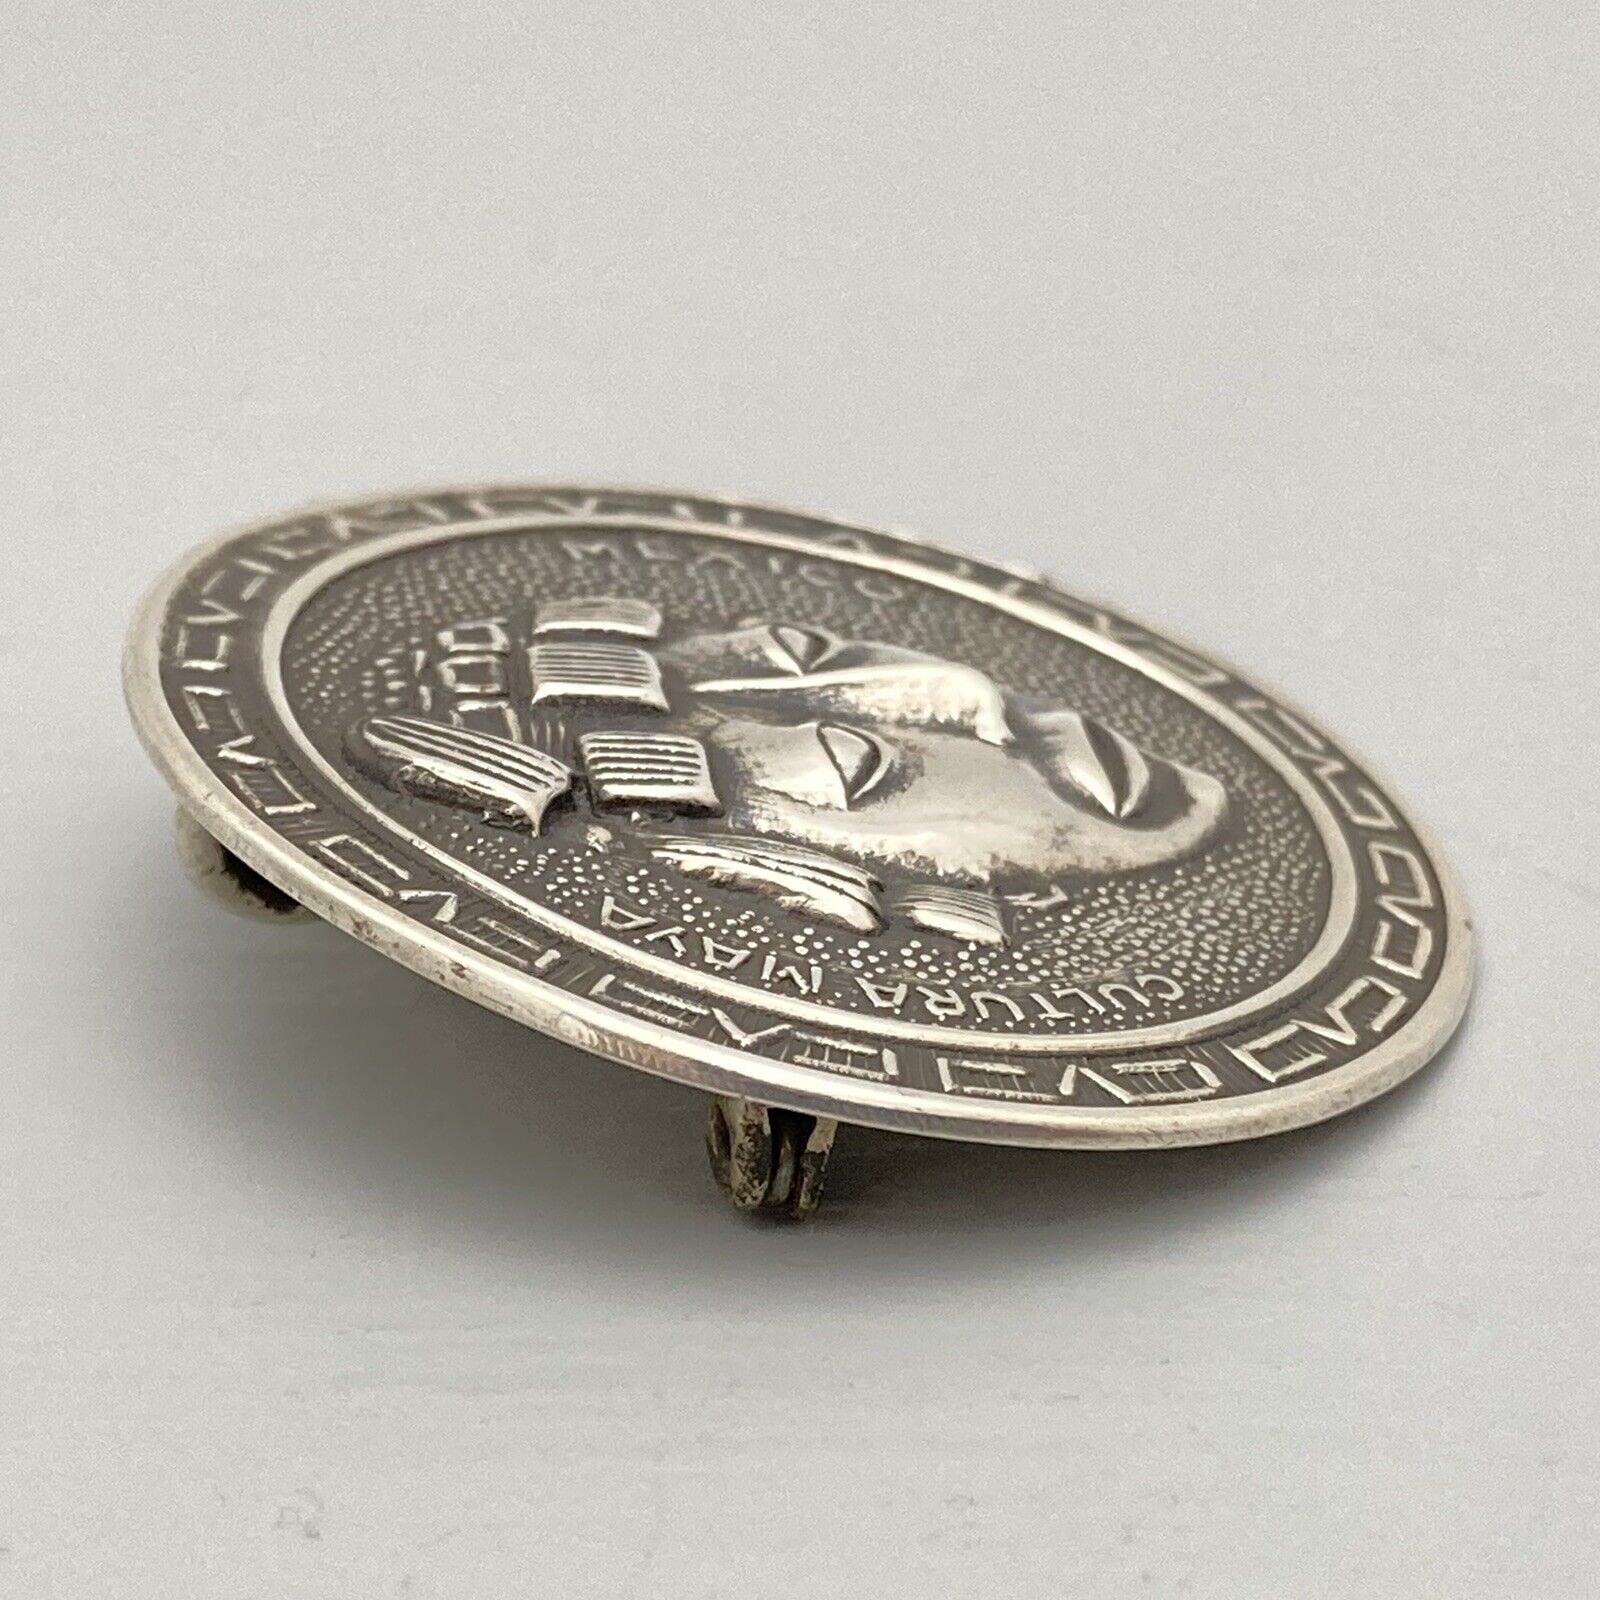 Vintage CULTURA MAYA Sterling Silver Pendant Brooch Mexico Signed GBH Eagle-1 Gwarancja jakości, bezpłatna wysyłka